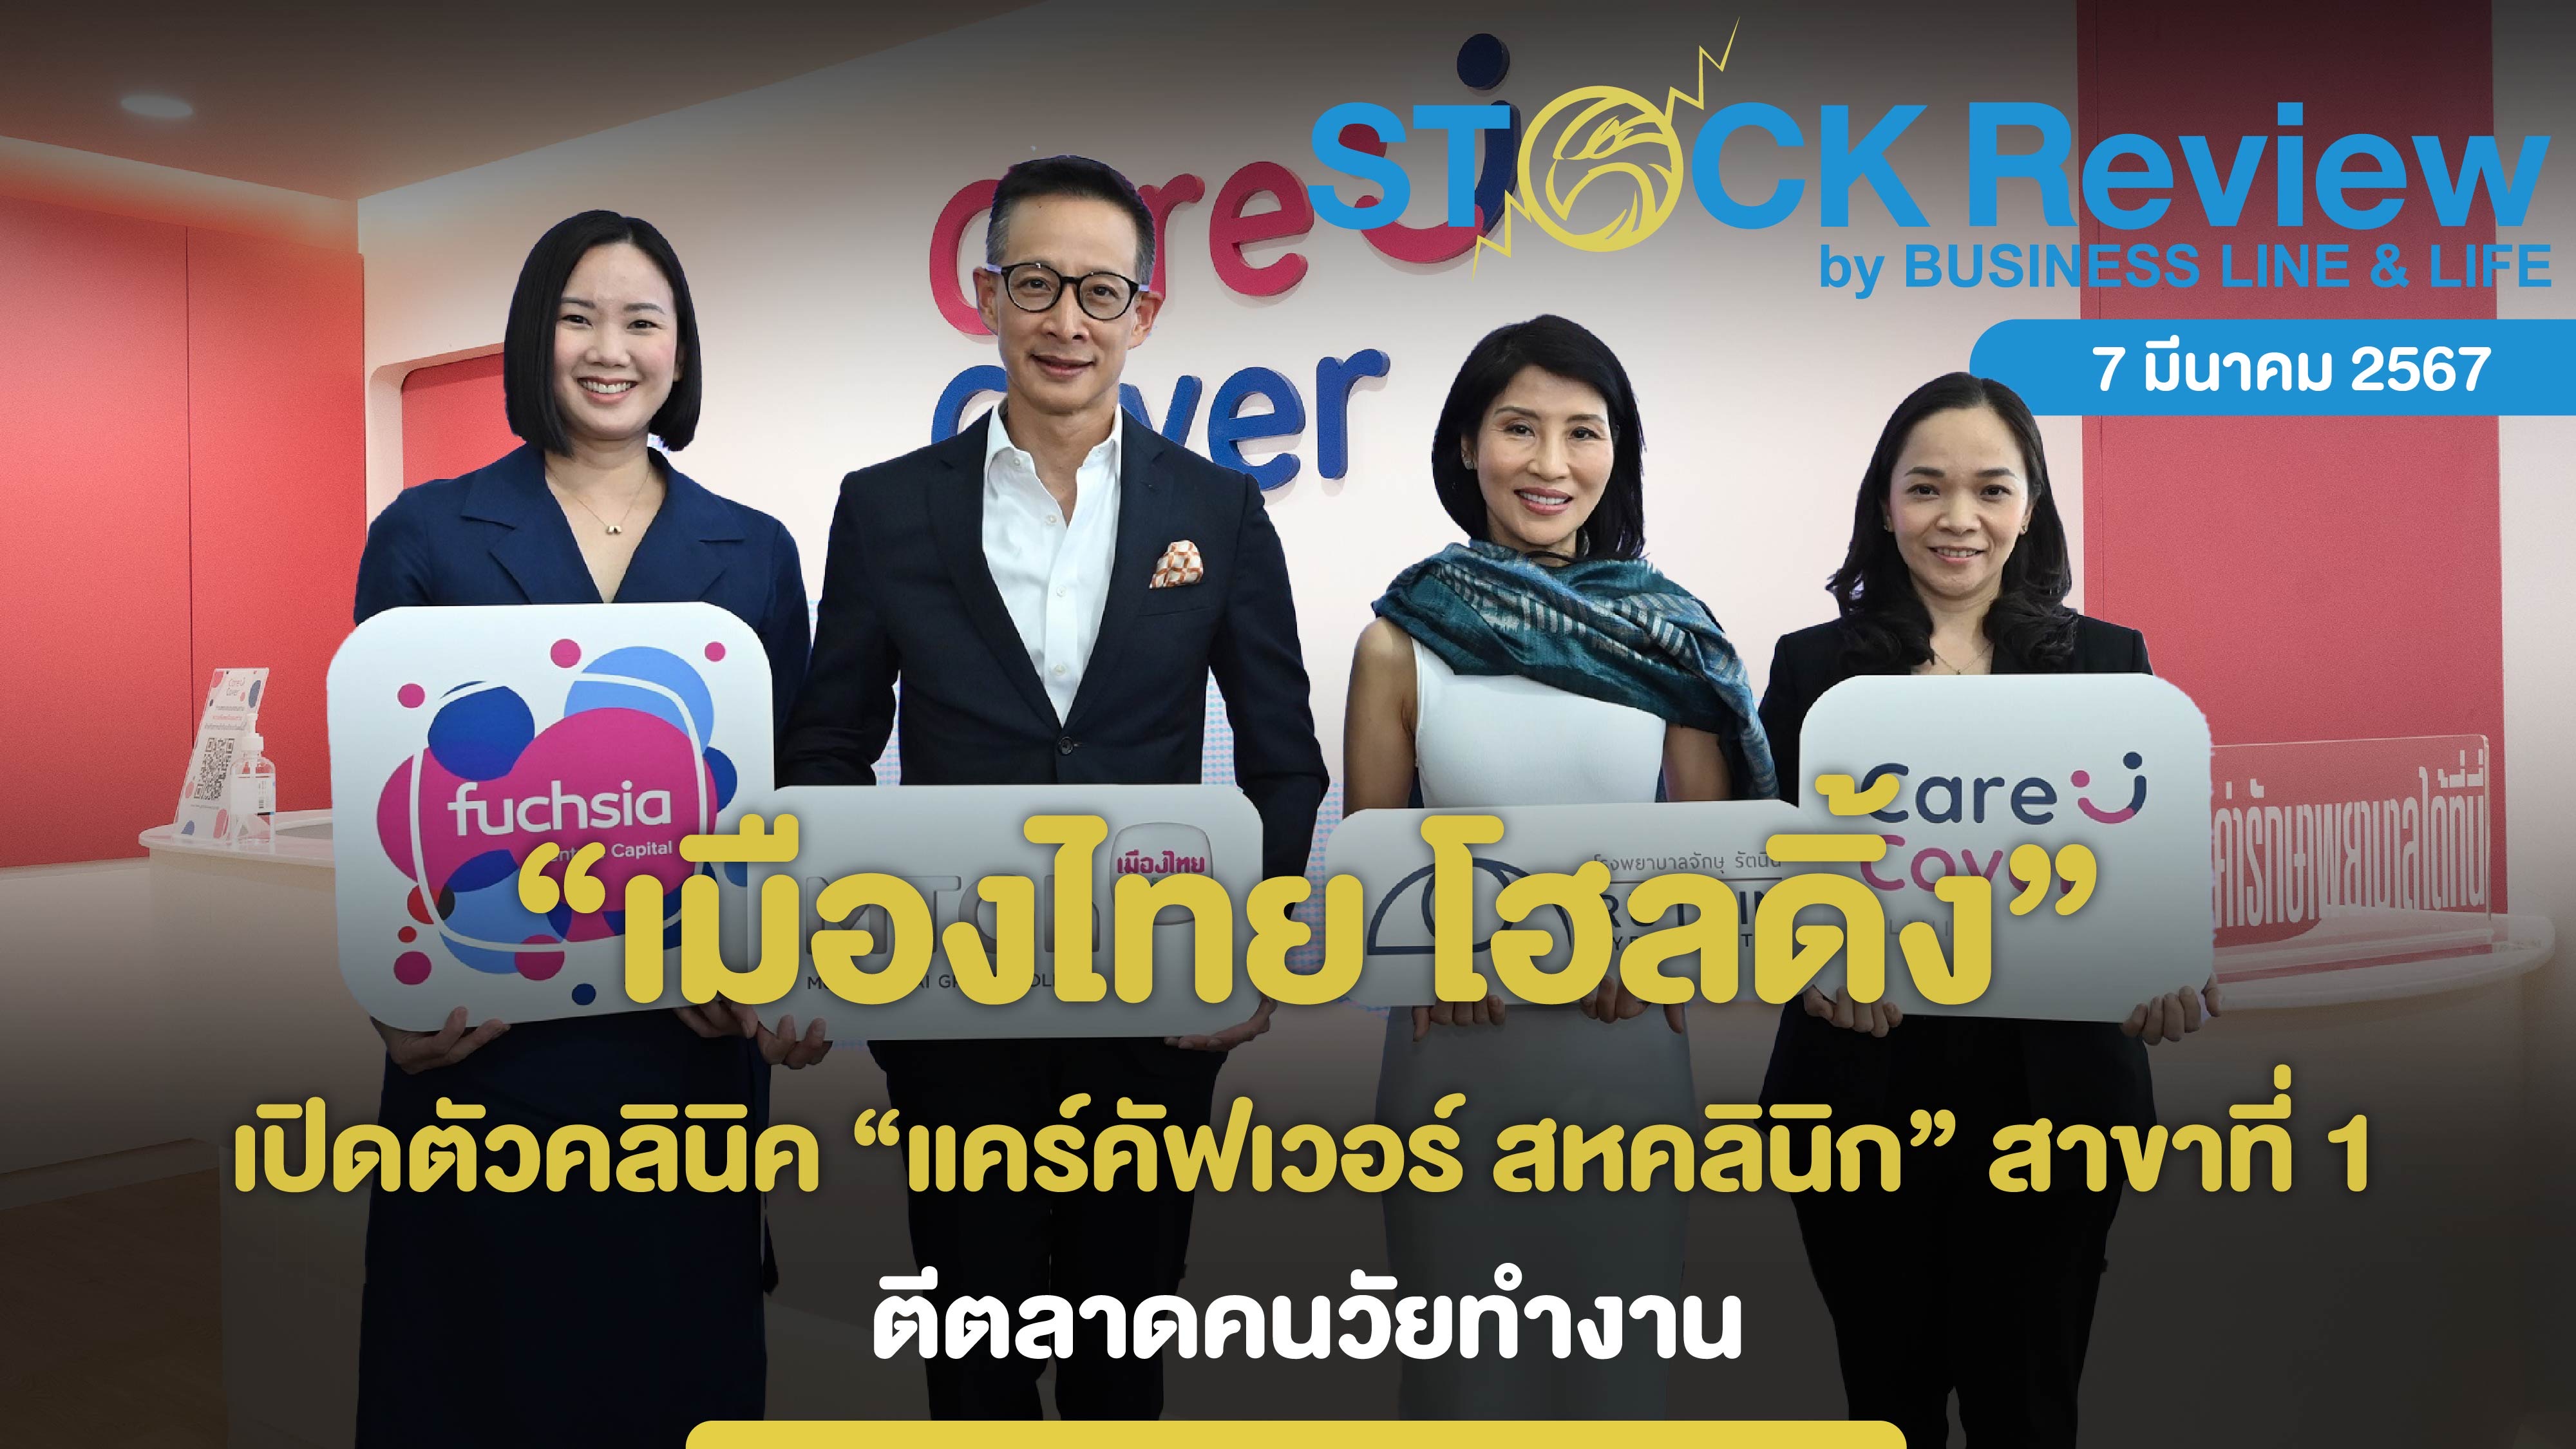 “เมืองไทย โฮลดิ้ง” เปิดตัวคลินิค “แคร์คัฟเวอร์ สหคลินิก” สาขาที่ 1 ตีตลาดคนวัยทำงาน